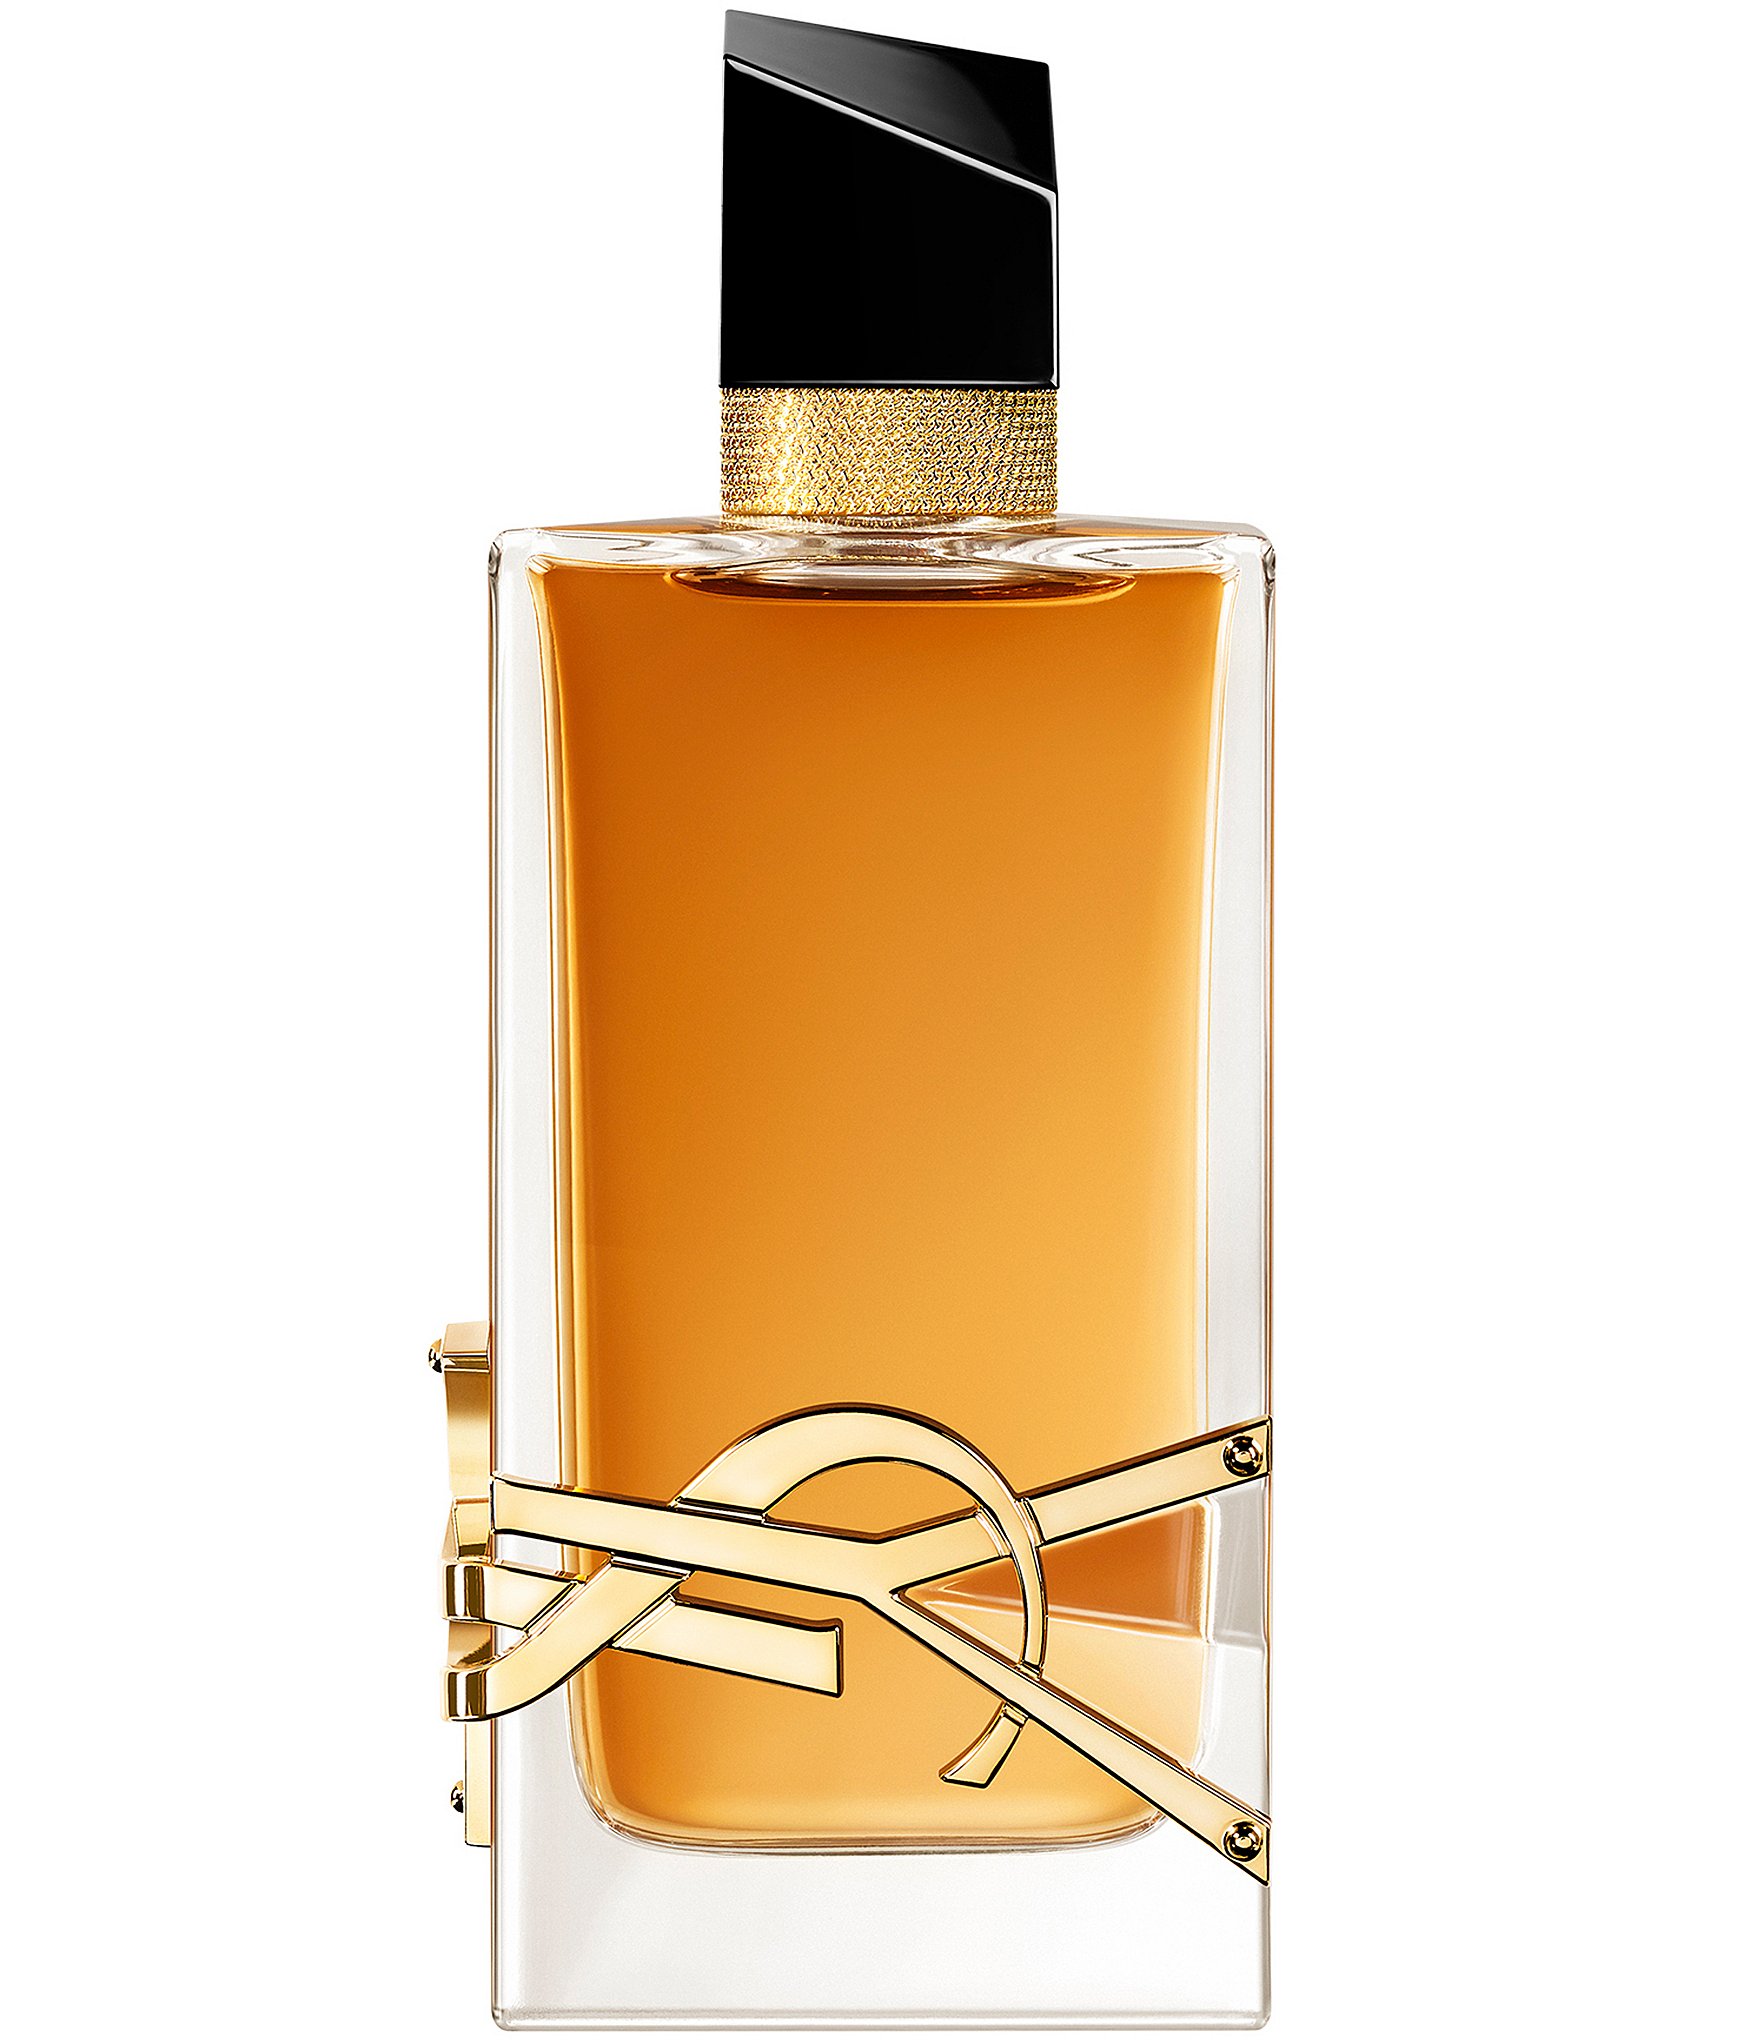 Grain de Poudre Yves Saint Laurent perfume - a fragrance for women